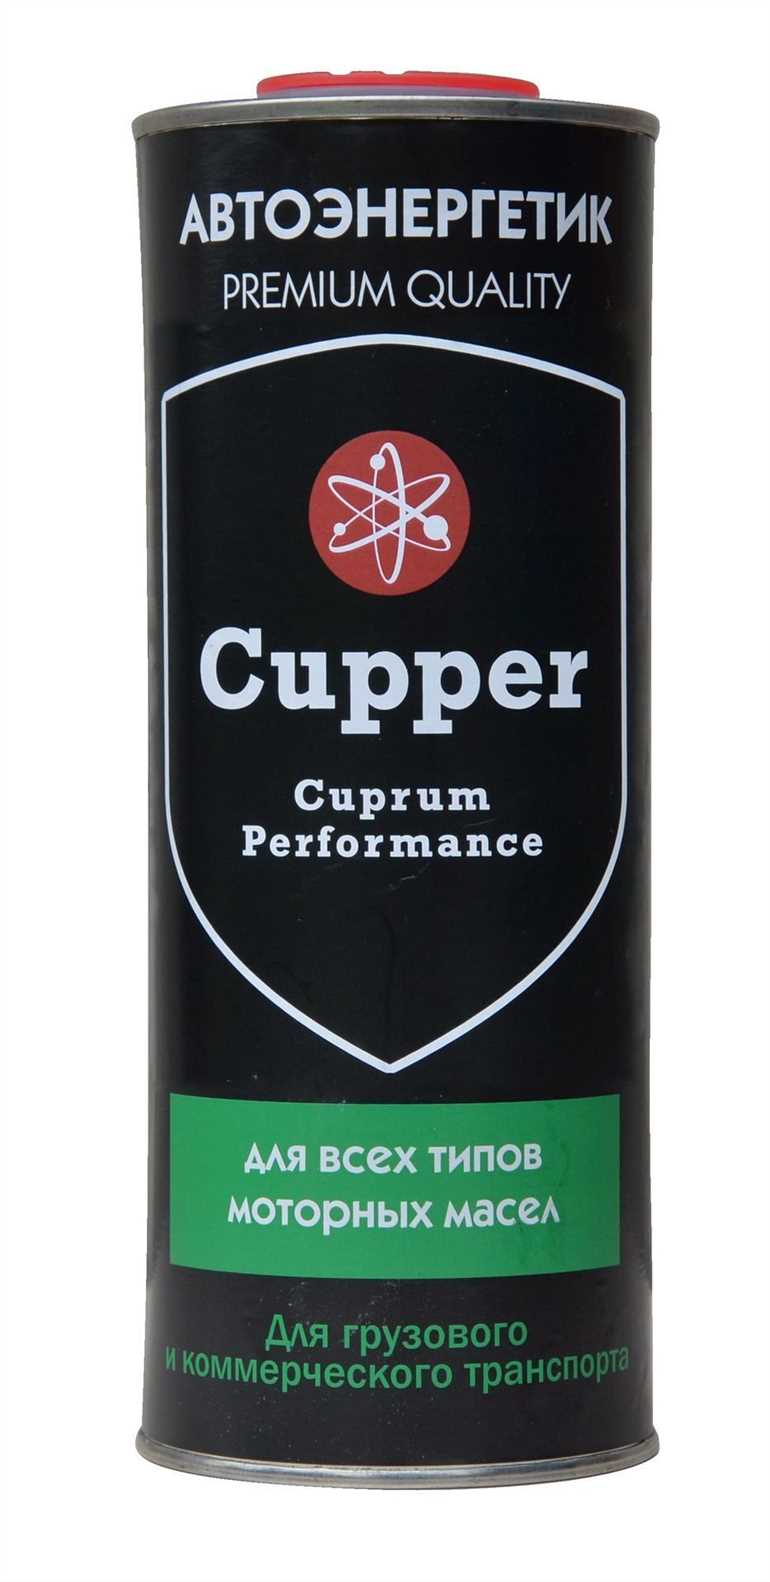 Почему выбирают моторные масла CUPPER?